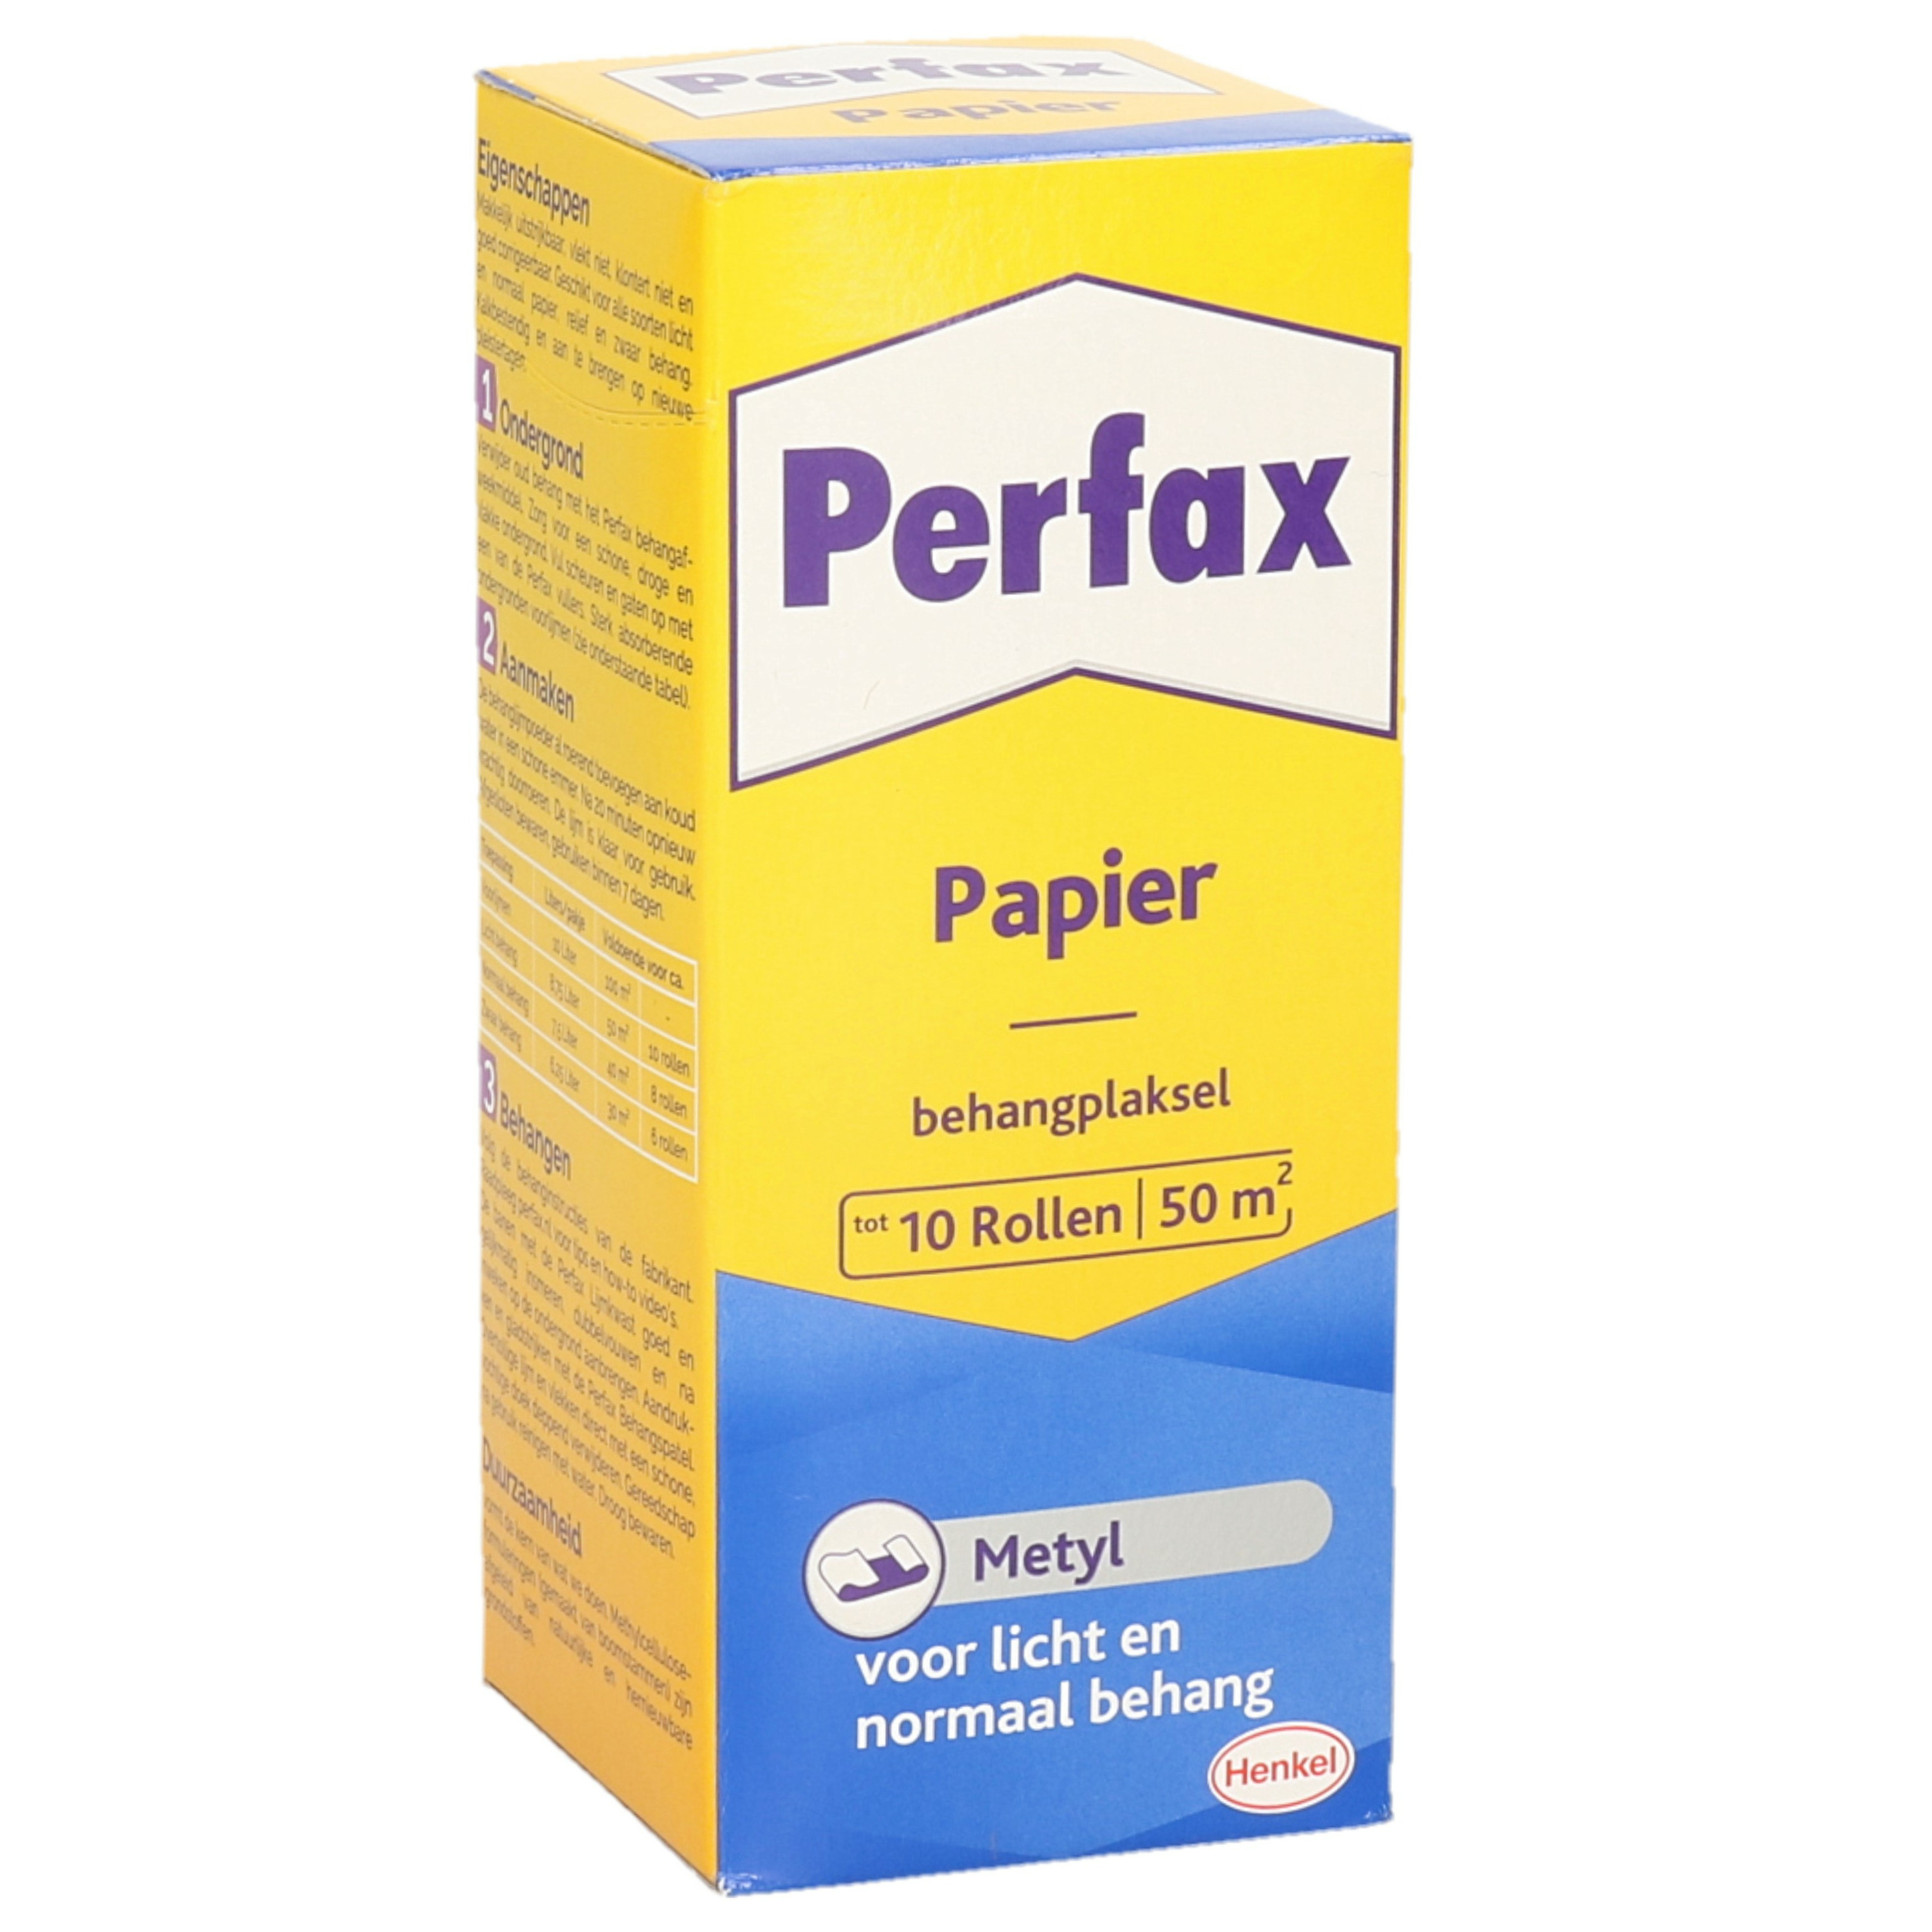 1x Pakken Perfax metyl behanglijm voor licht tot normaal behang 125 gram